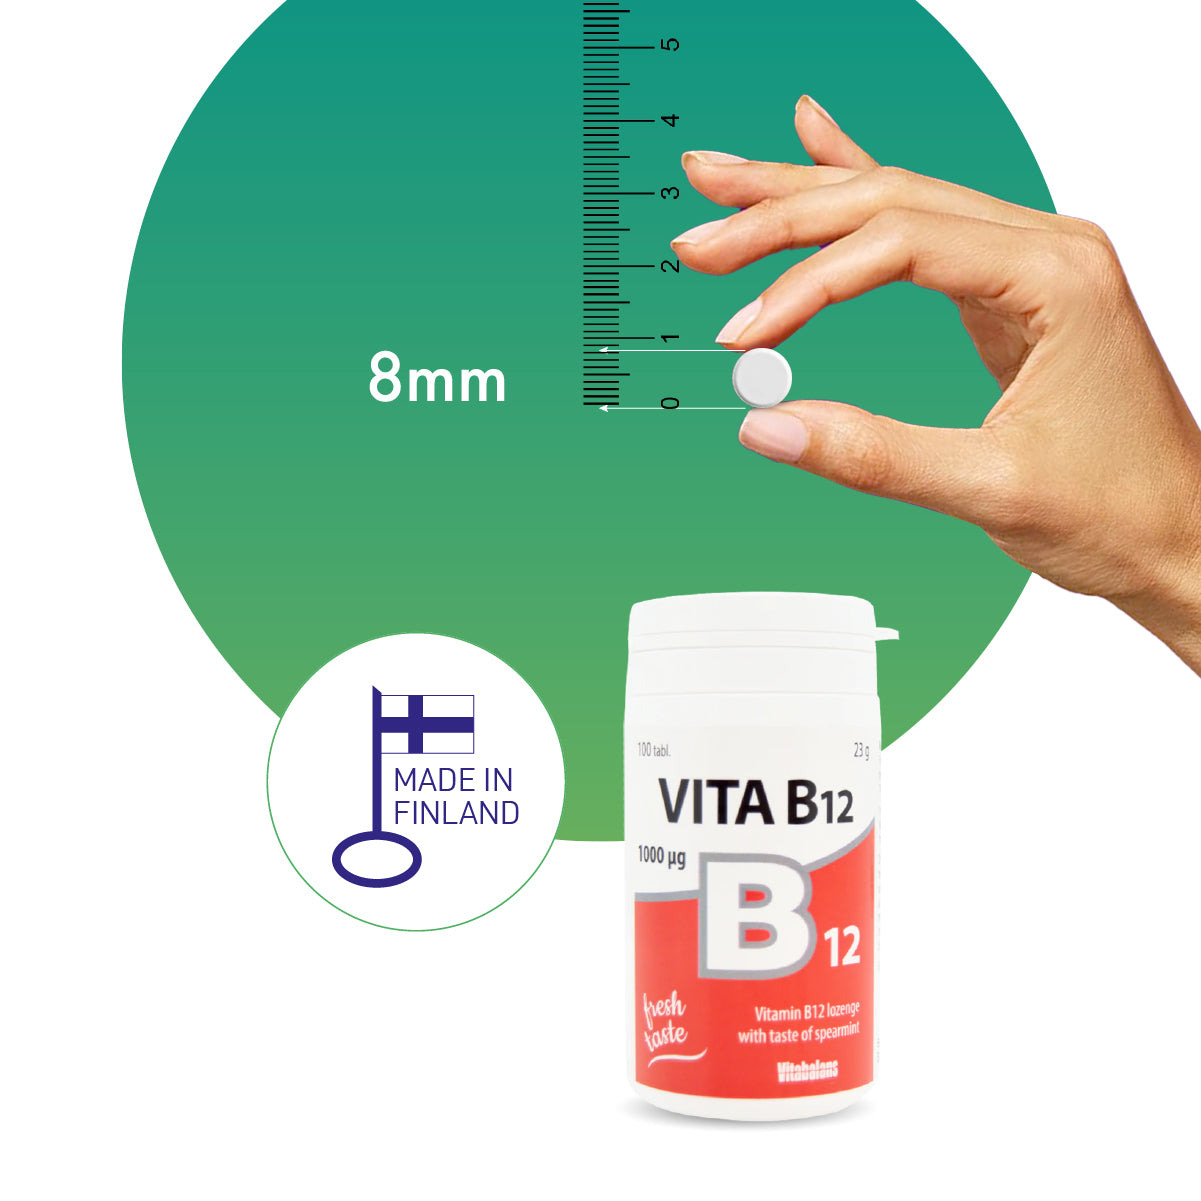 VITABALANS Vitamin B12 1000 mcg - 100 Lozenges